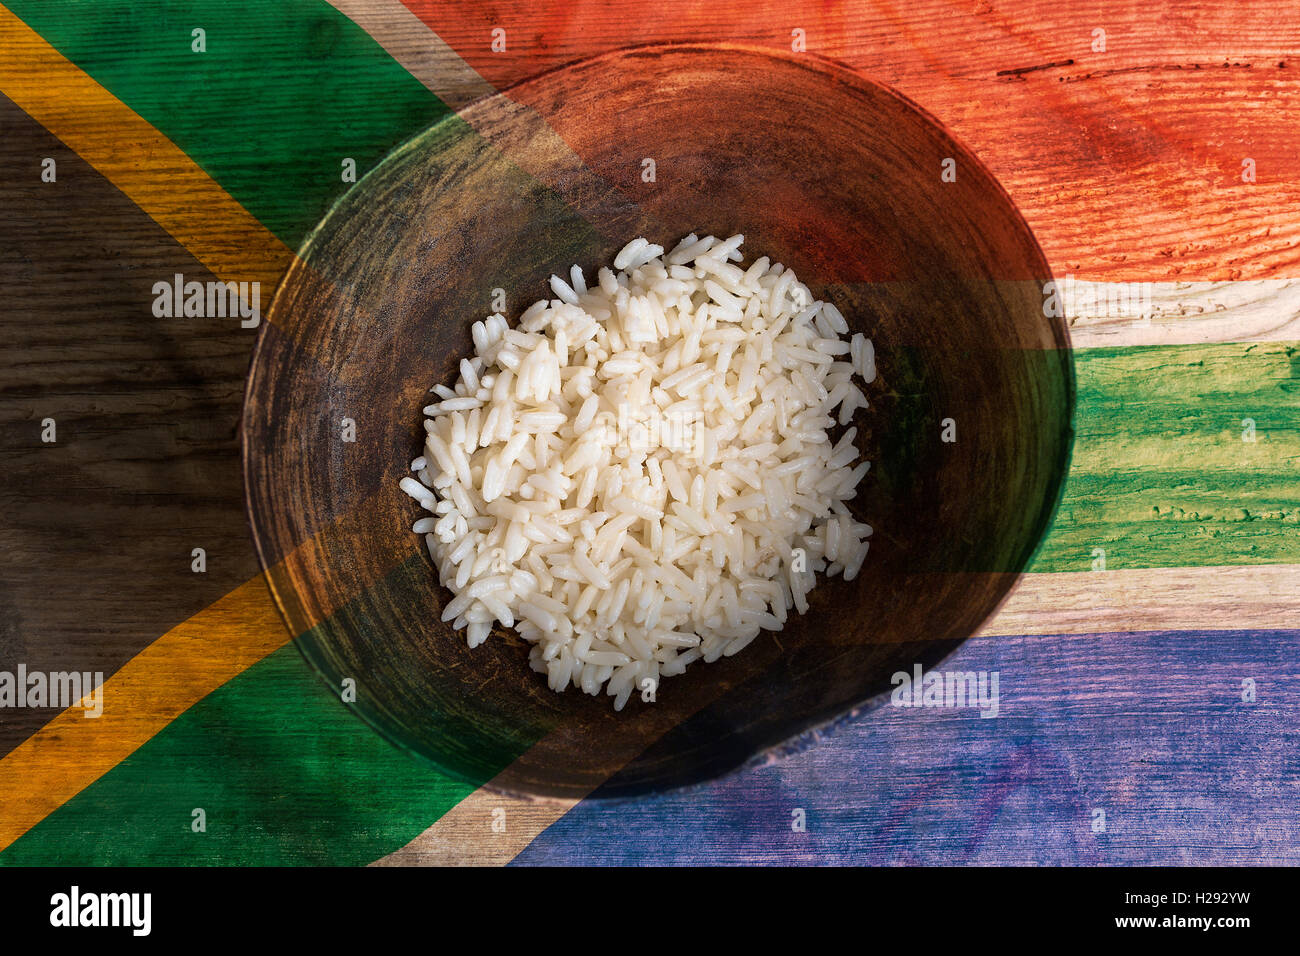 Armut-Konzept, Schüssel Reis mit Südafrika Flagge auf hölzernen Hintergrund Stockfoto